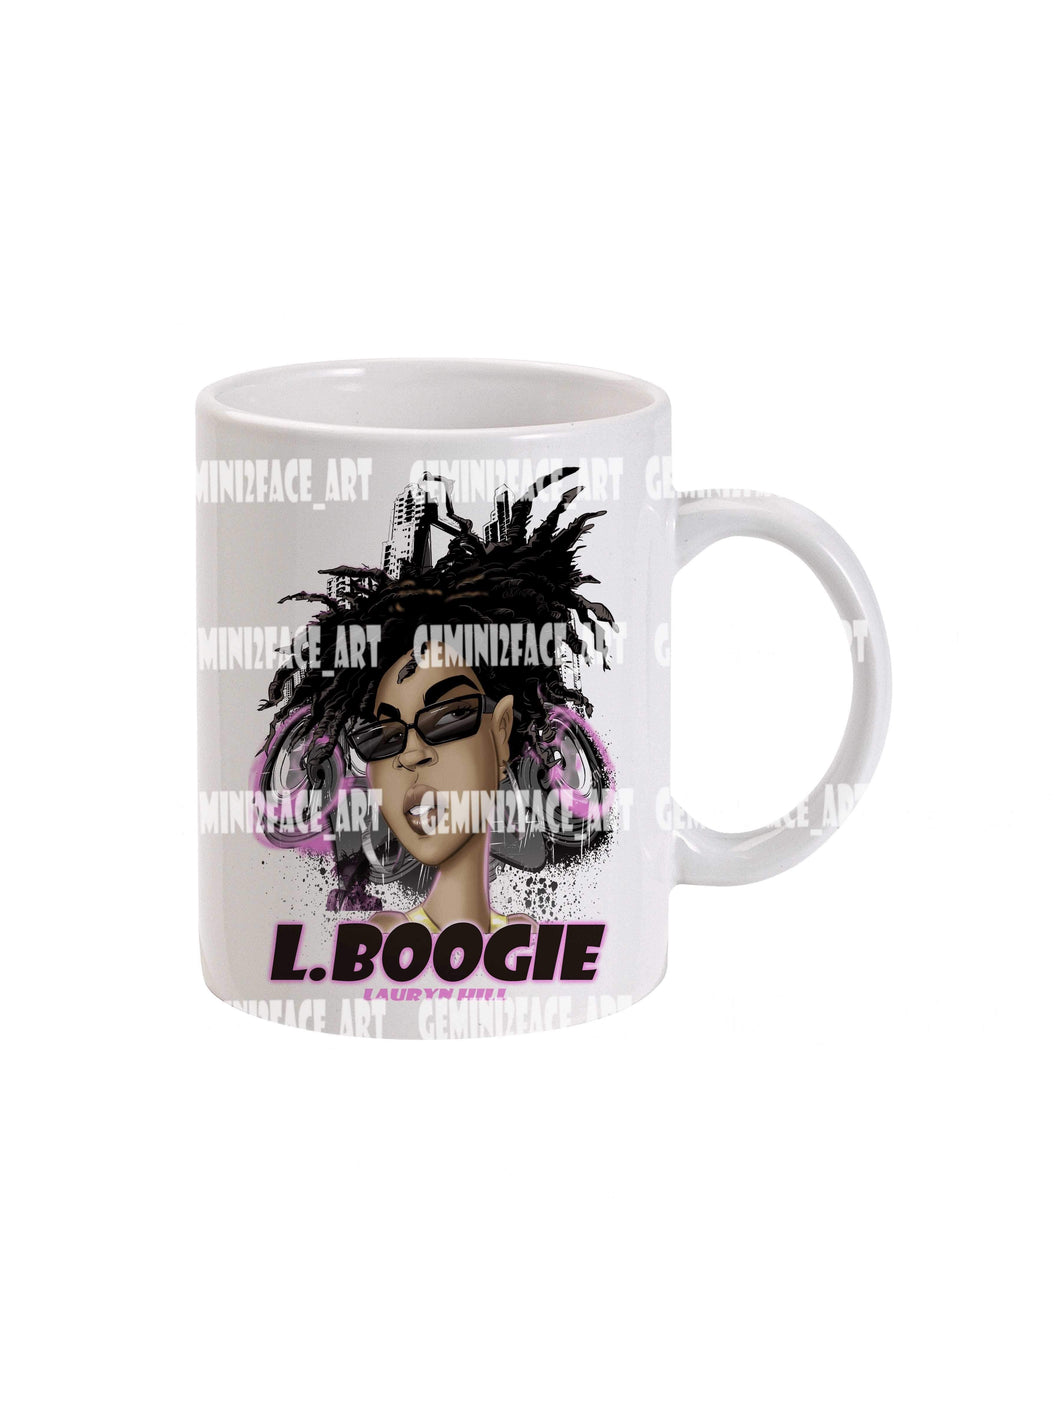 El Boogie Mug Gemini2face Art E-Store 